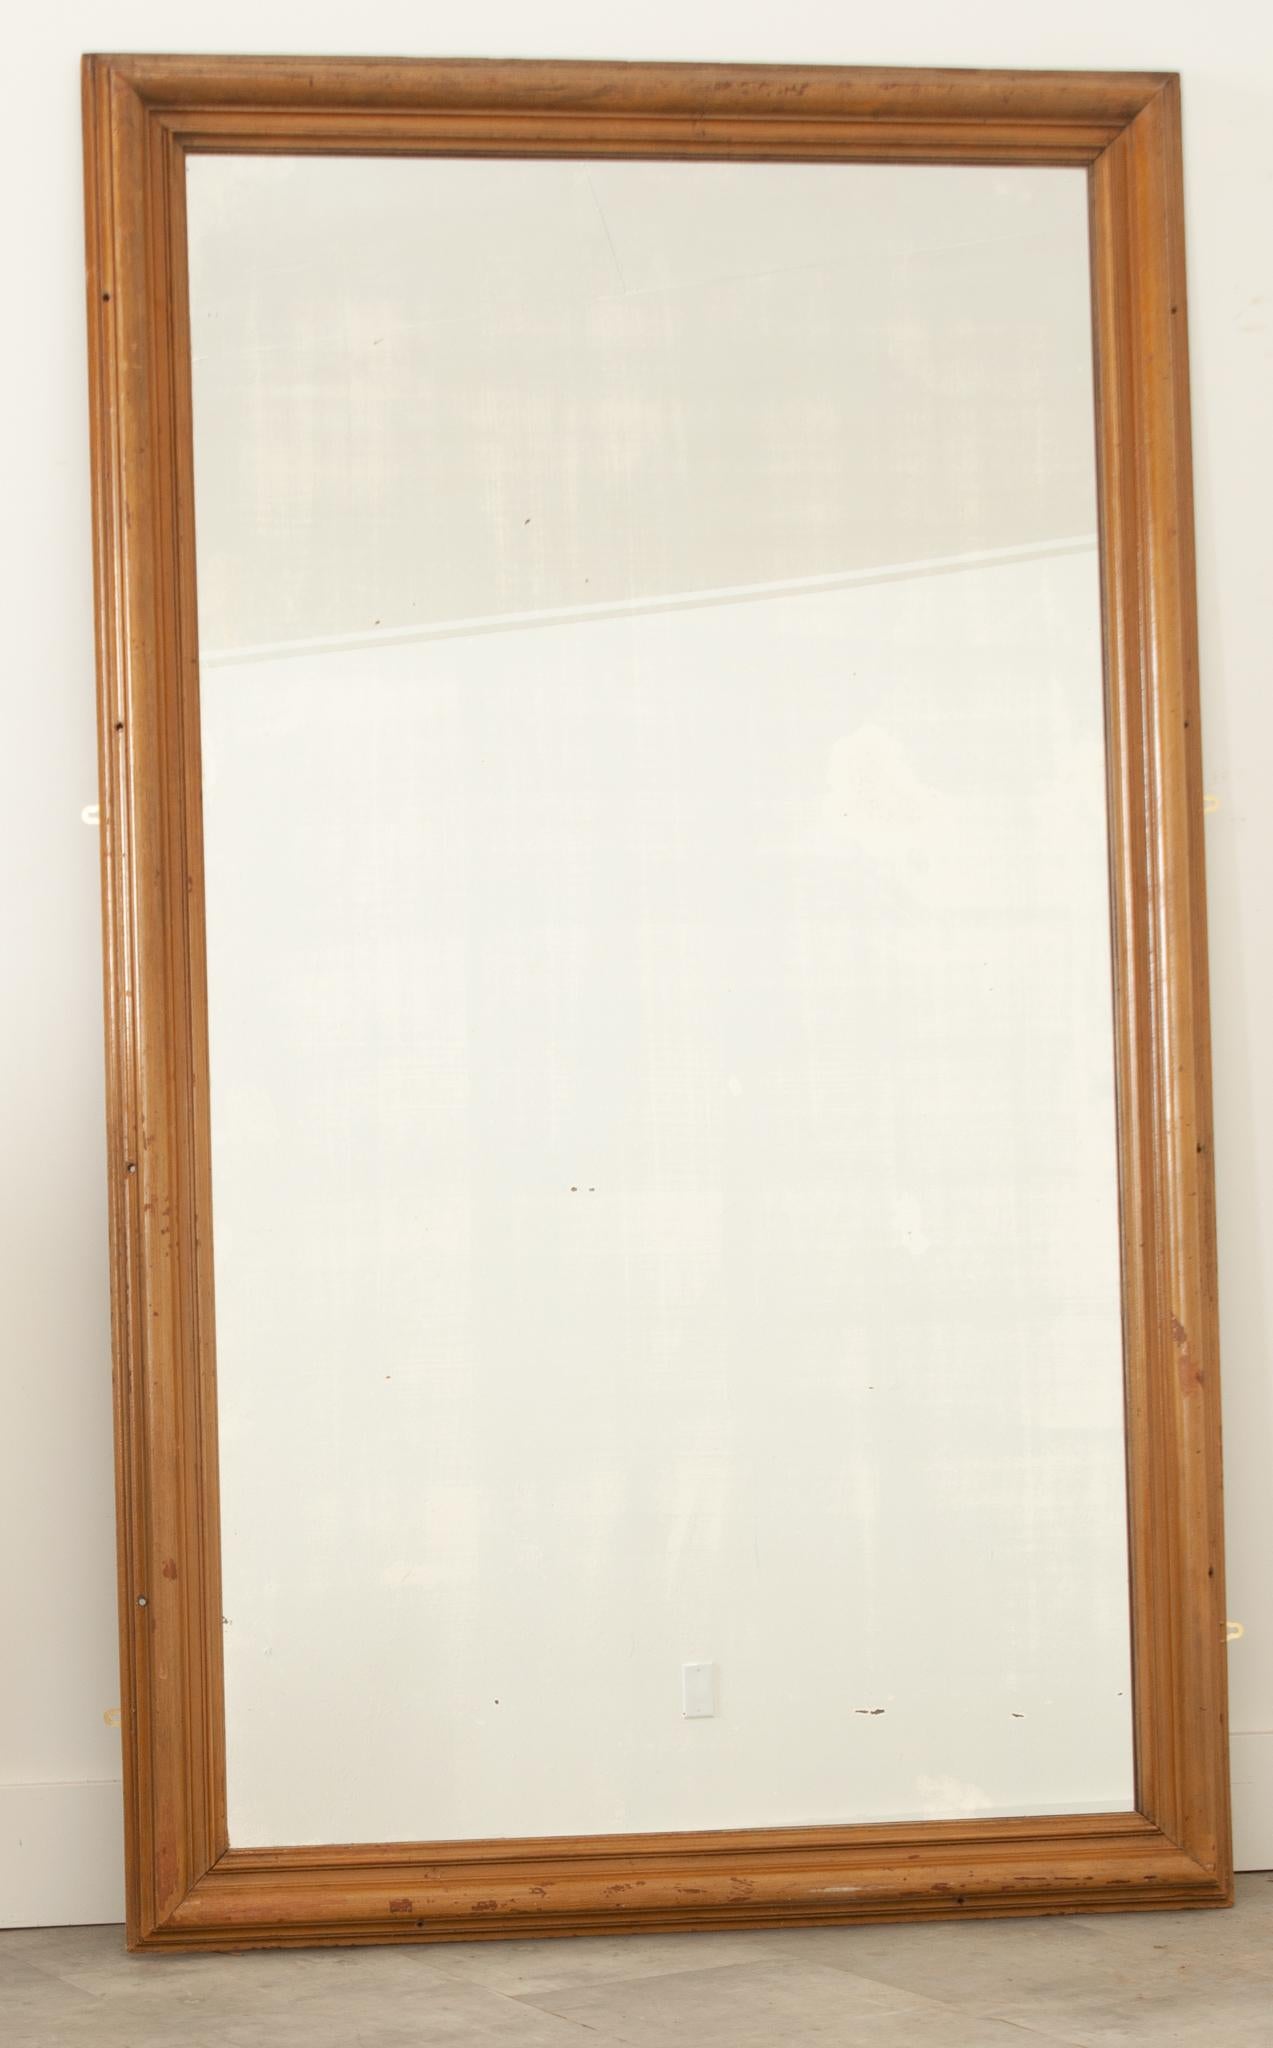 Un miroir massif soutenu par un cadre en bois moulé à la finition usée. Les petits trous uniformes trouvés sur le cadre désignent l'endroit où il a été vissé dans un mur à une époque pour le soutenir. La plaque de miroir au mercure d'origine